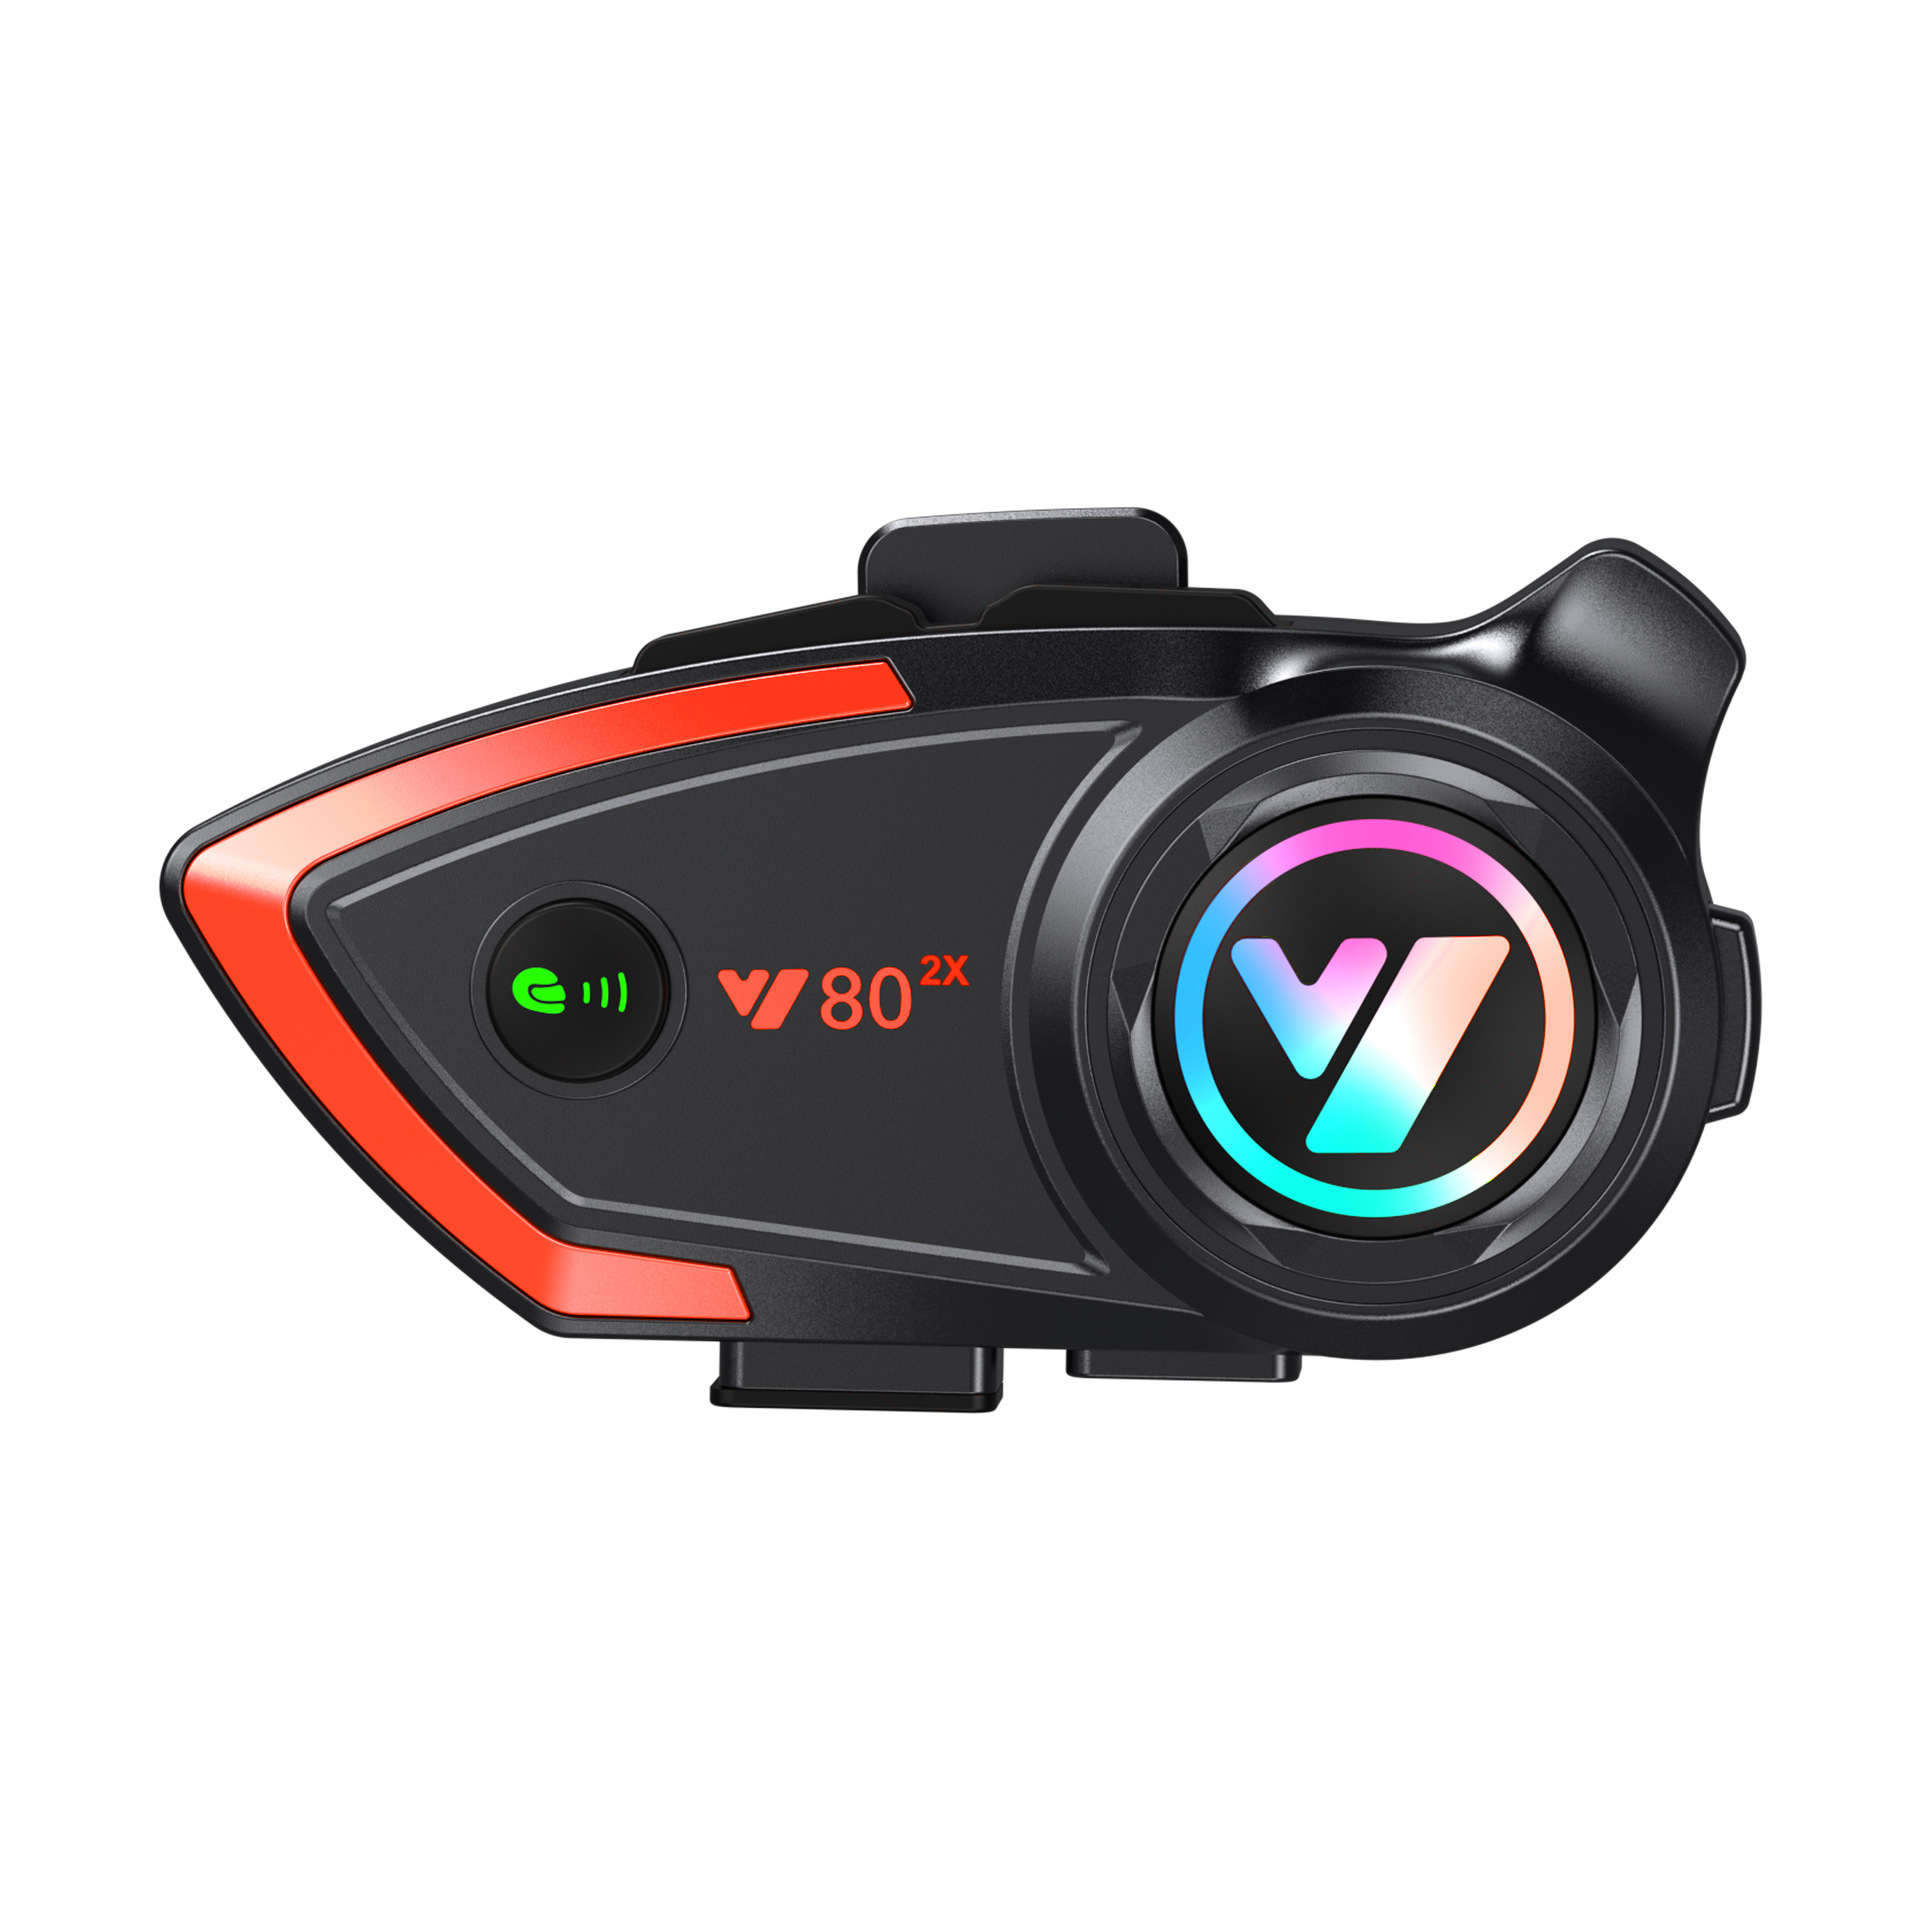 Y802x摩托车对讲头盔蓝牙耳机800米双人对讲适可配第三方头盔耳机详情图5